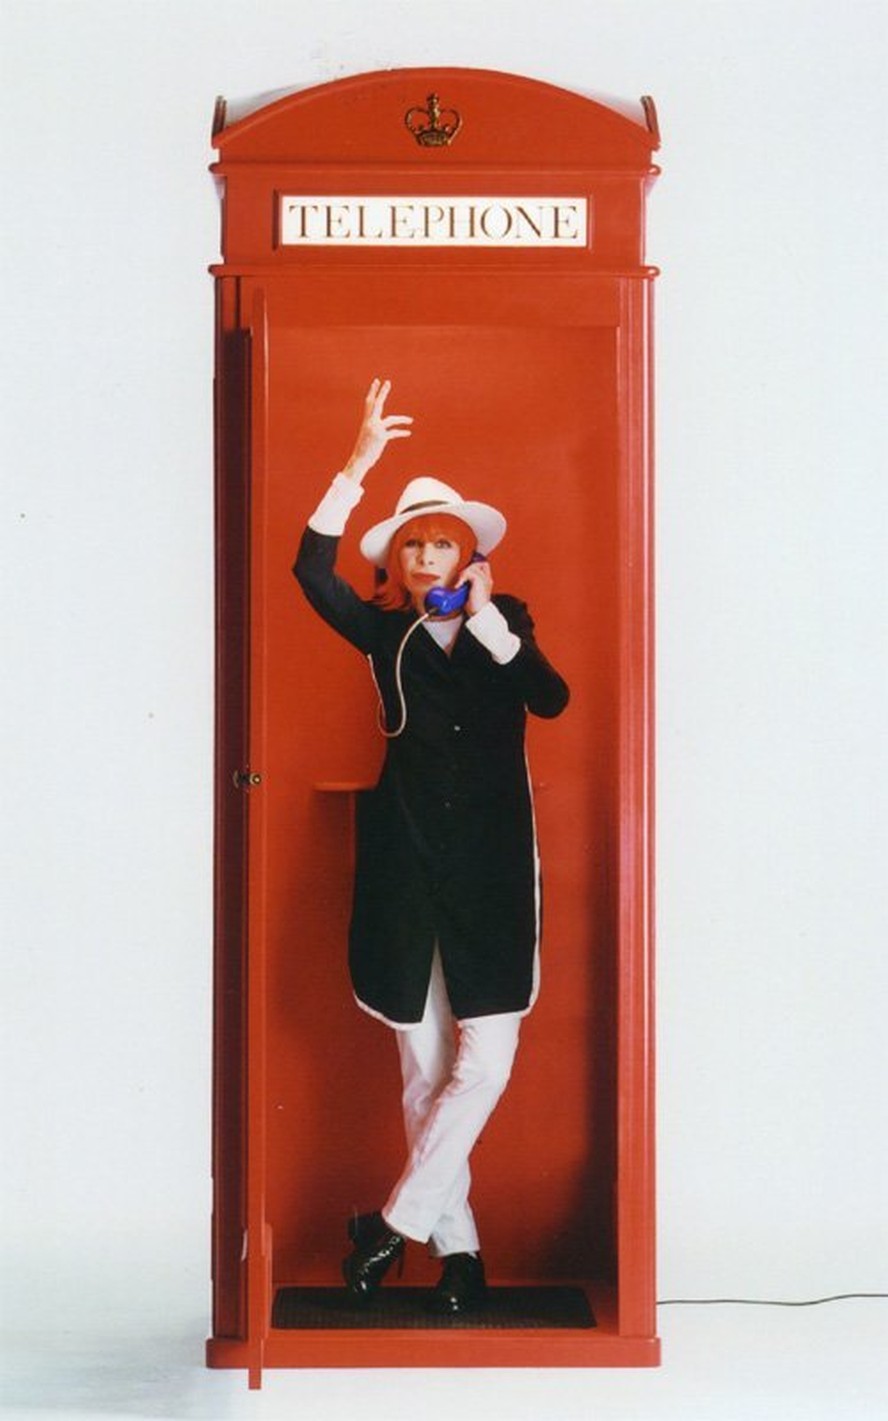 A cantora Rita Lee posa diante de um típico telefone britânico